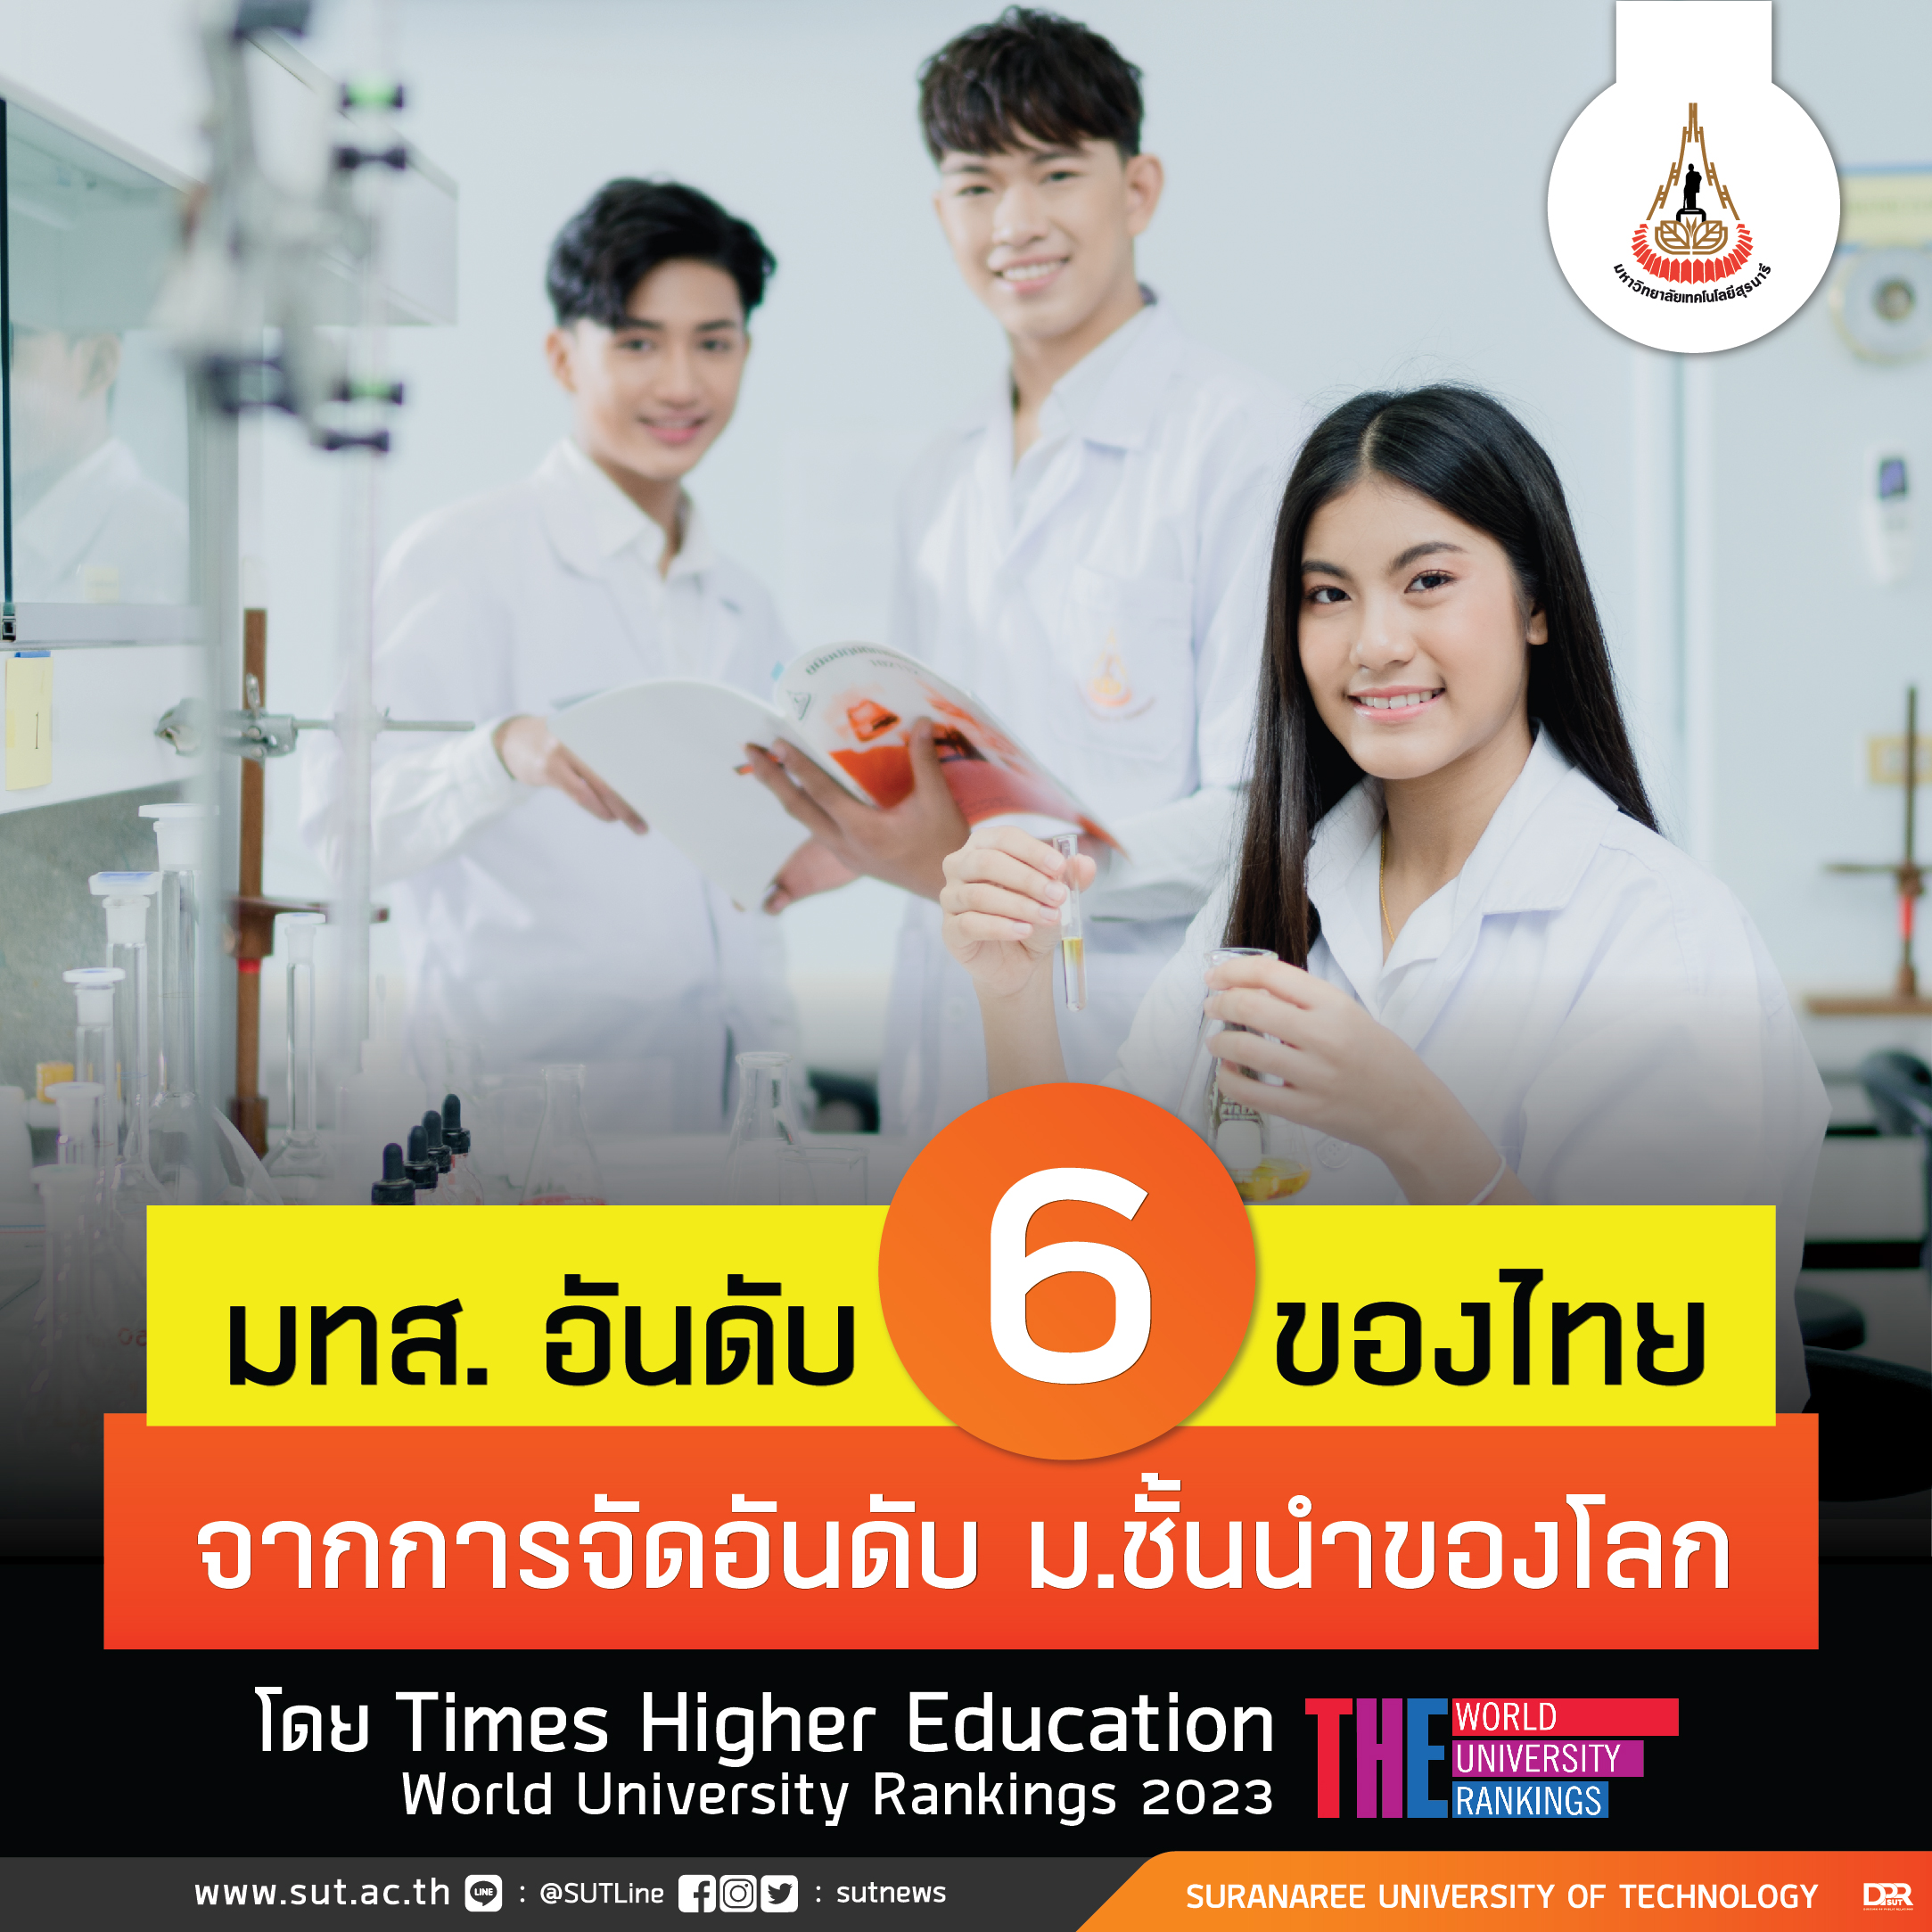 สุดยอด! มทส.ขึ้นอันดับ 6 มหาวิทยาลัยไทยจากการจัดอันดับม.ชั้นนำของโลก